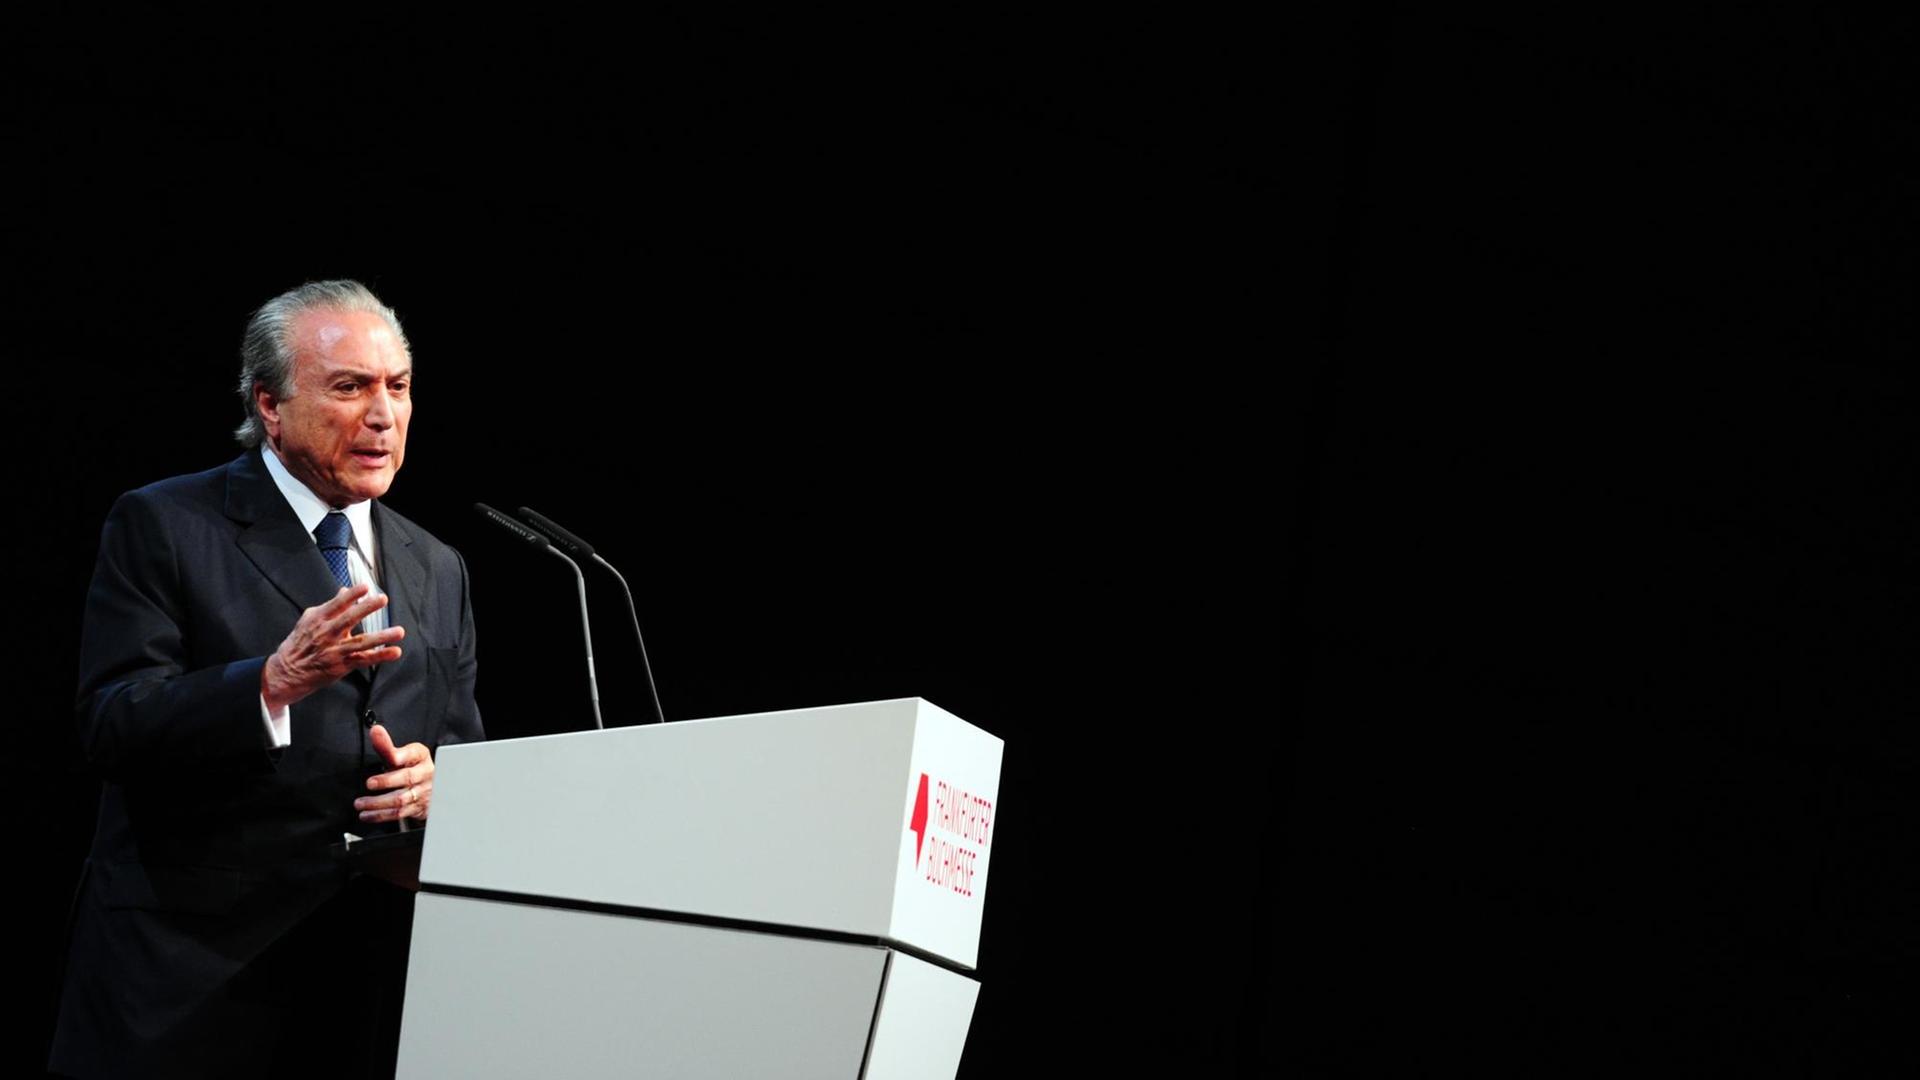 Der brasilianische Vizepräsident Michel Temer spricht am 08.10.2013 auf der Eröffnungsfeier der Buchmesse in Frankfurt am Main.